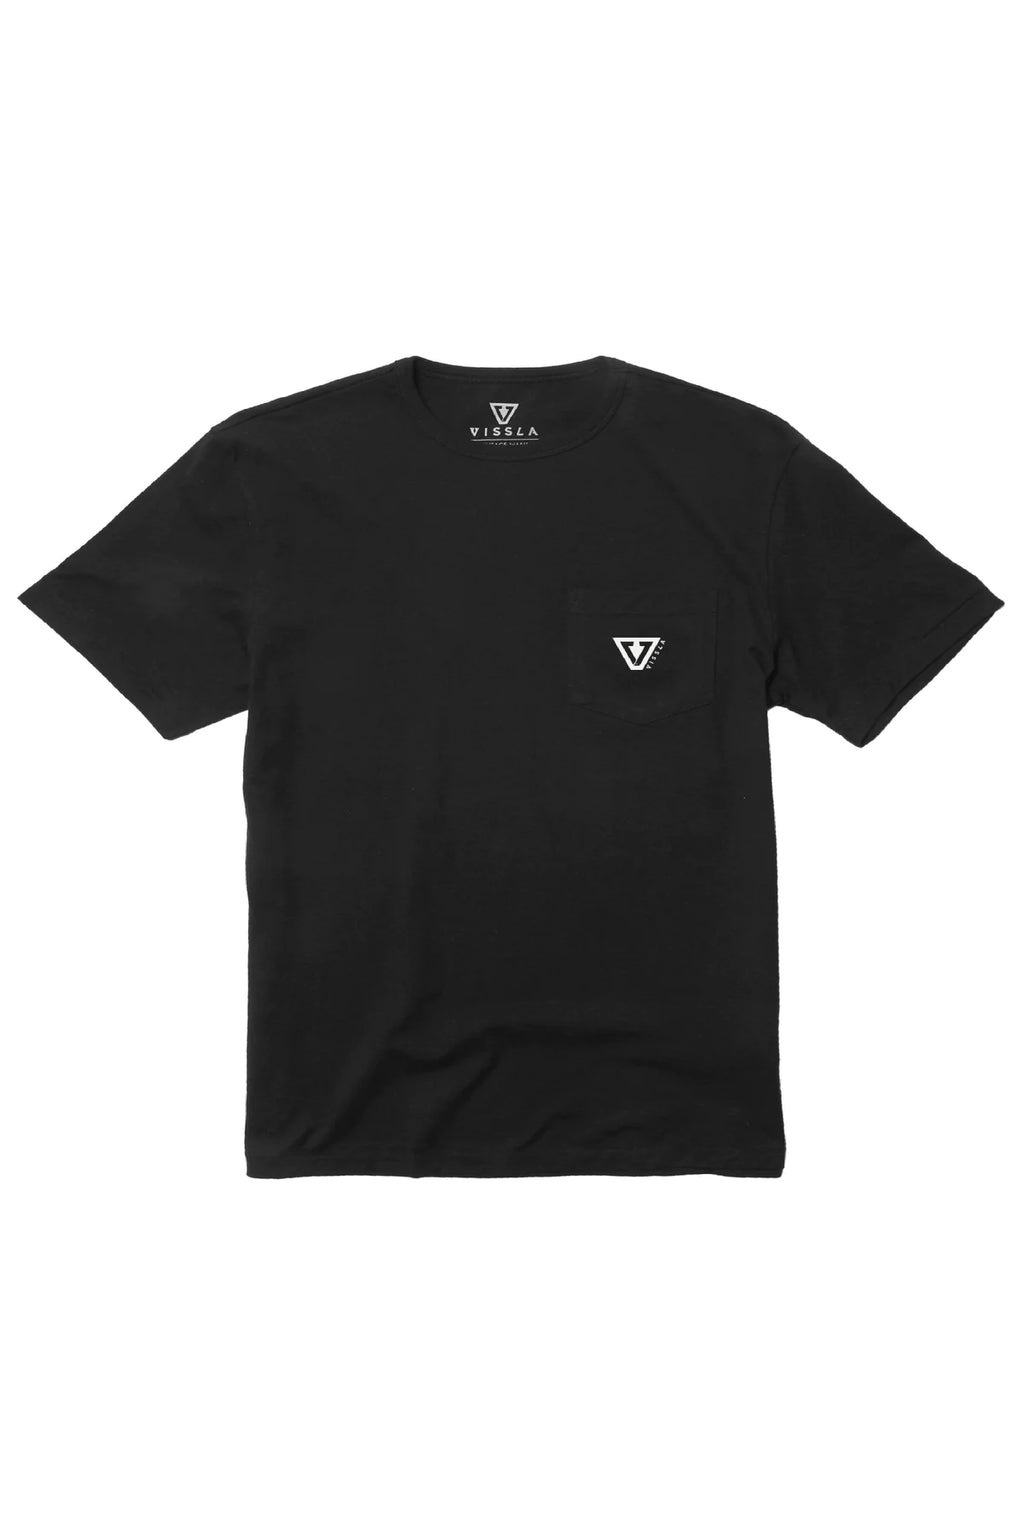 Vissla - Established Premium Pocket T-Shirt